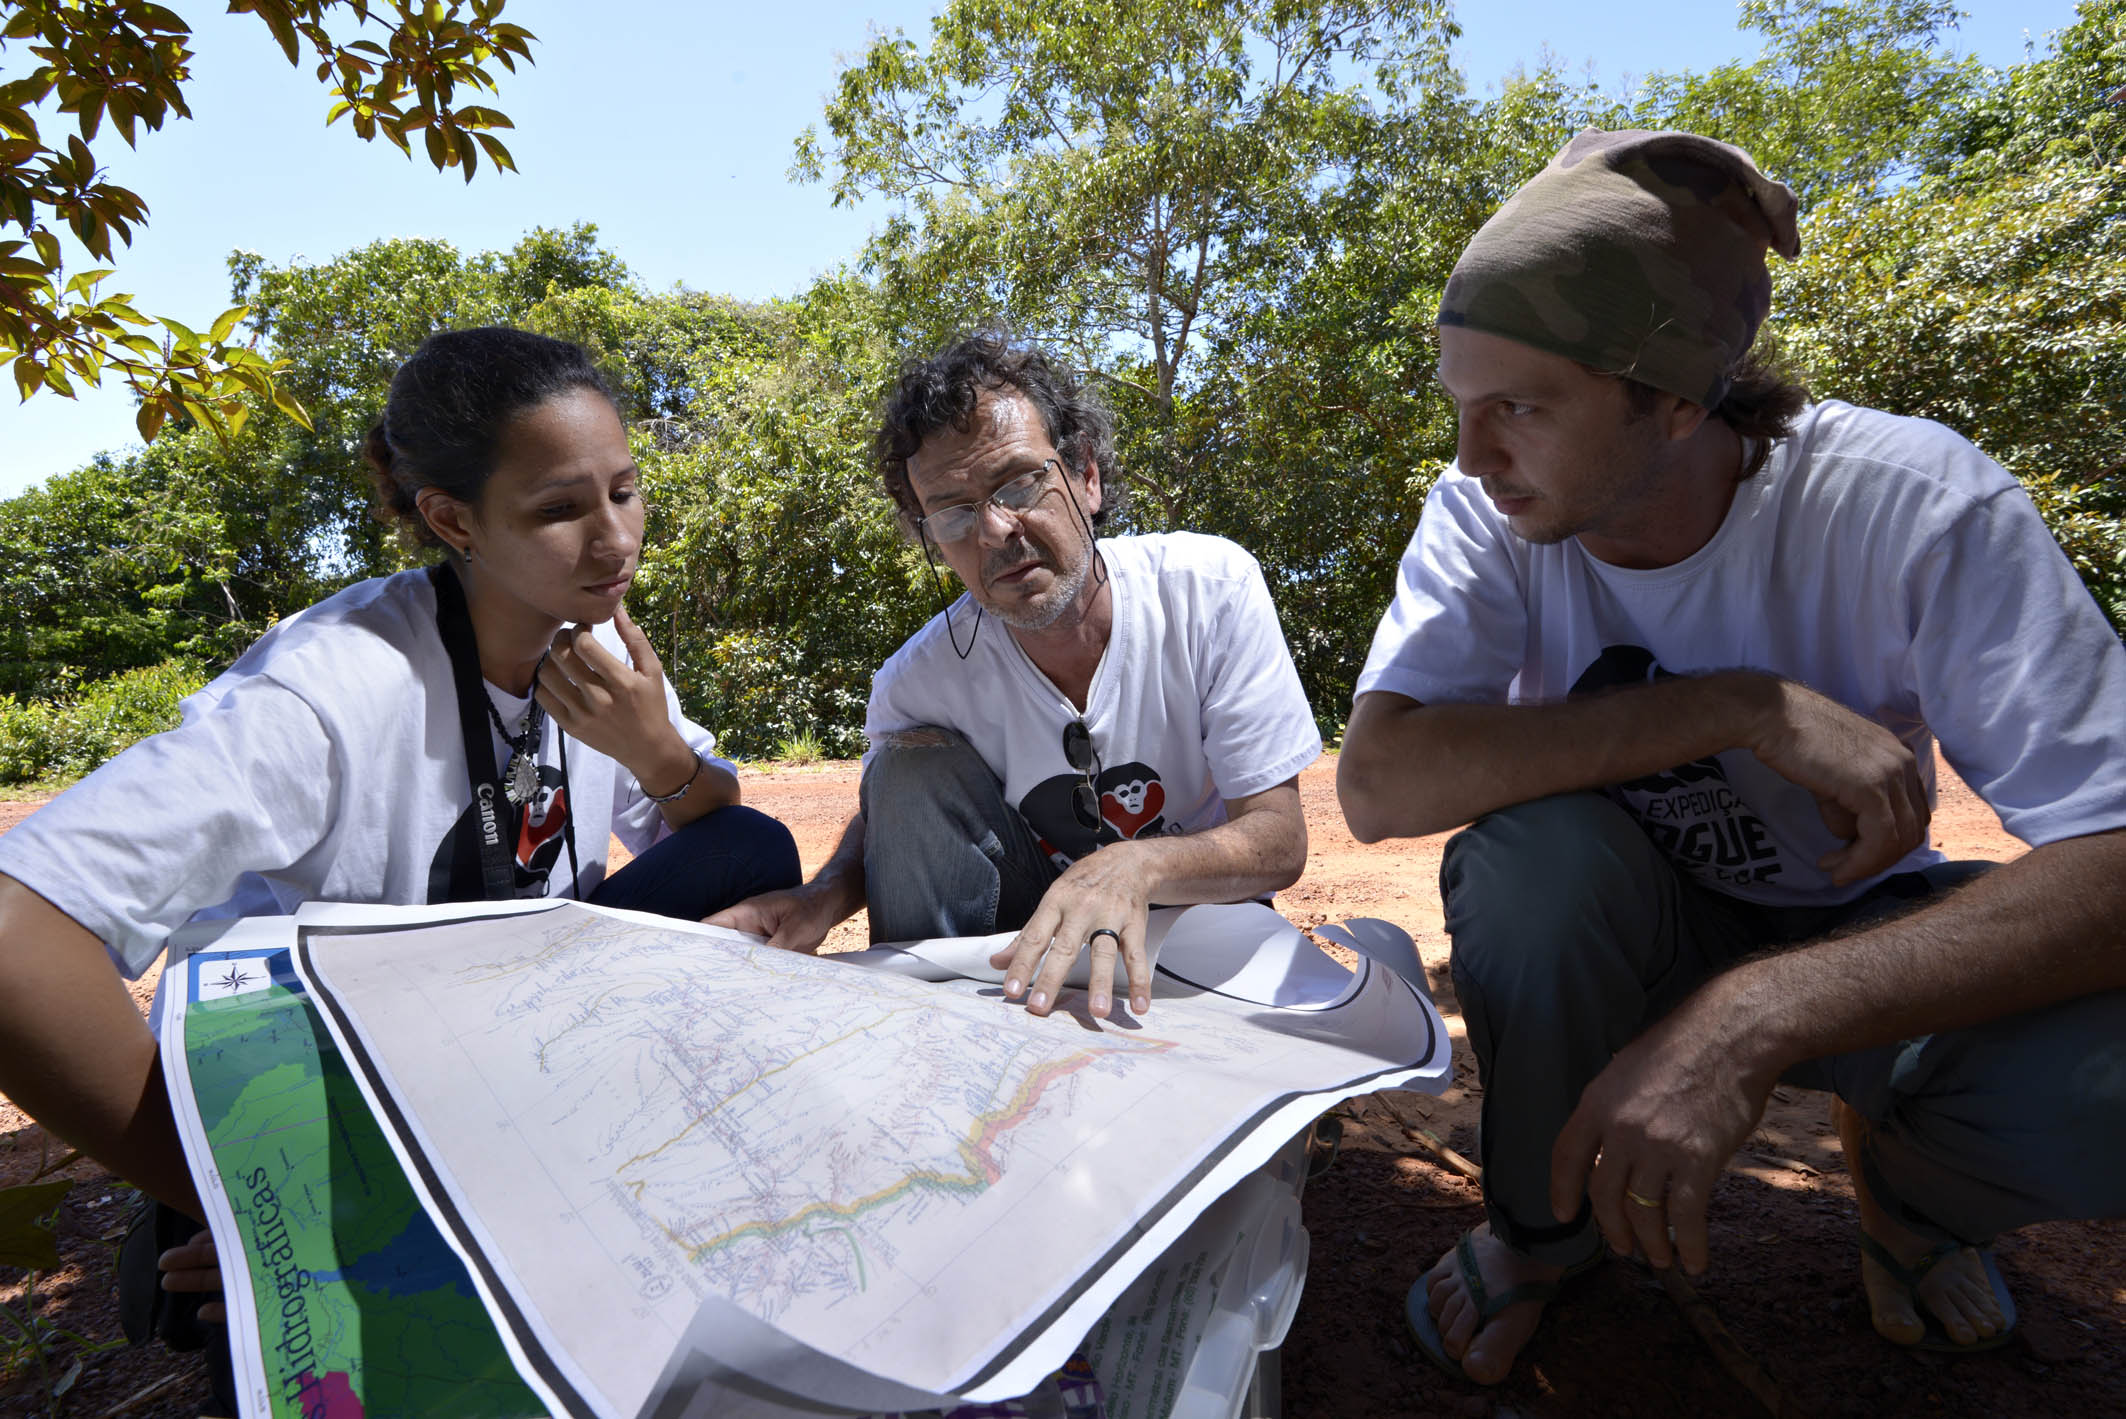 Três dos participantes da expedição conferindo um mapa e possíveis rotas para o trabalho de campo